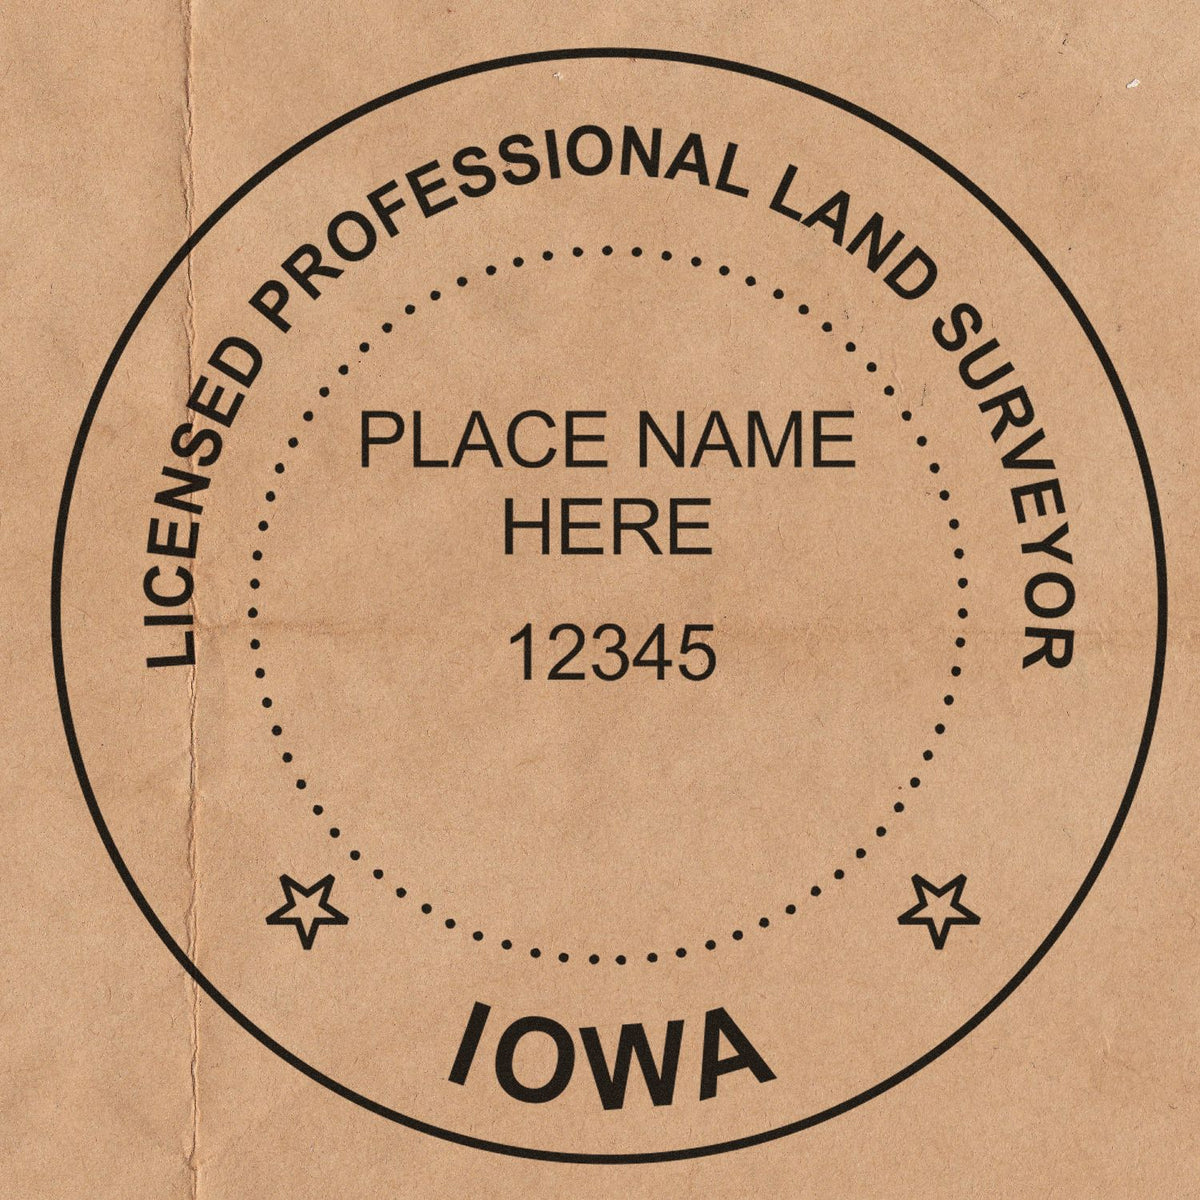 Iowa Land Surveyor Seal Stamp In Use Photo